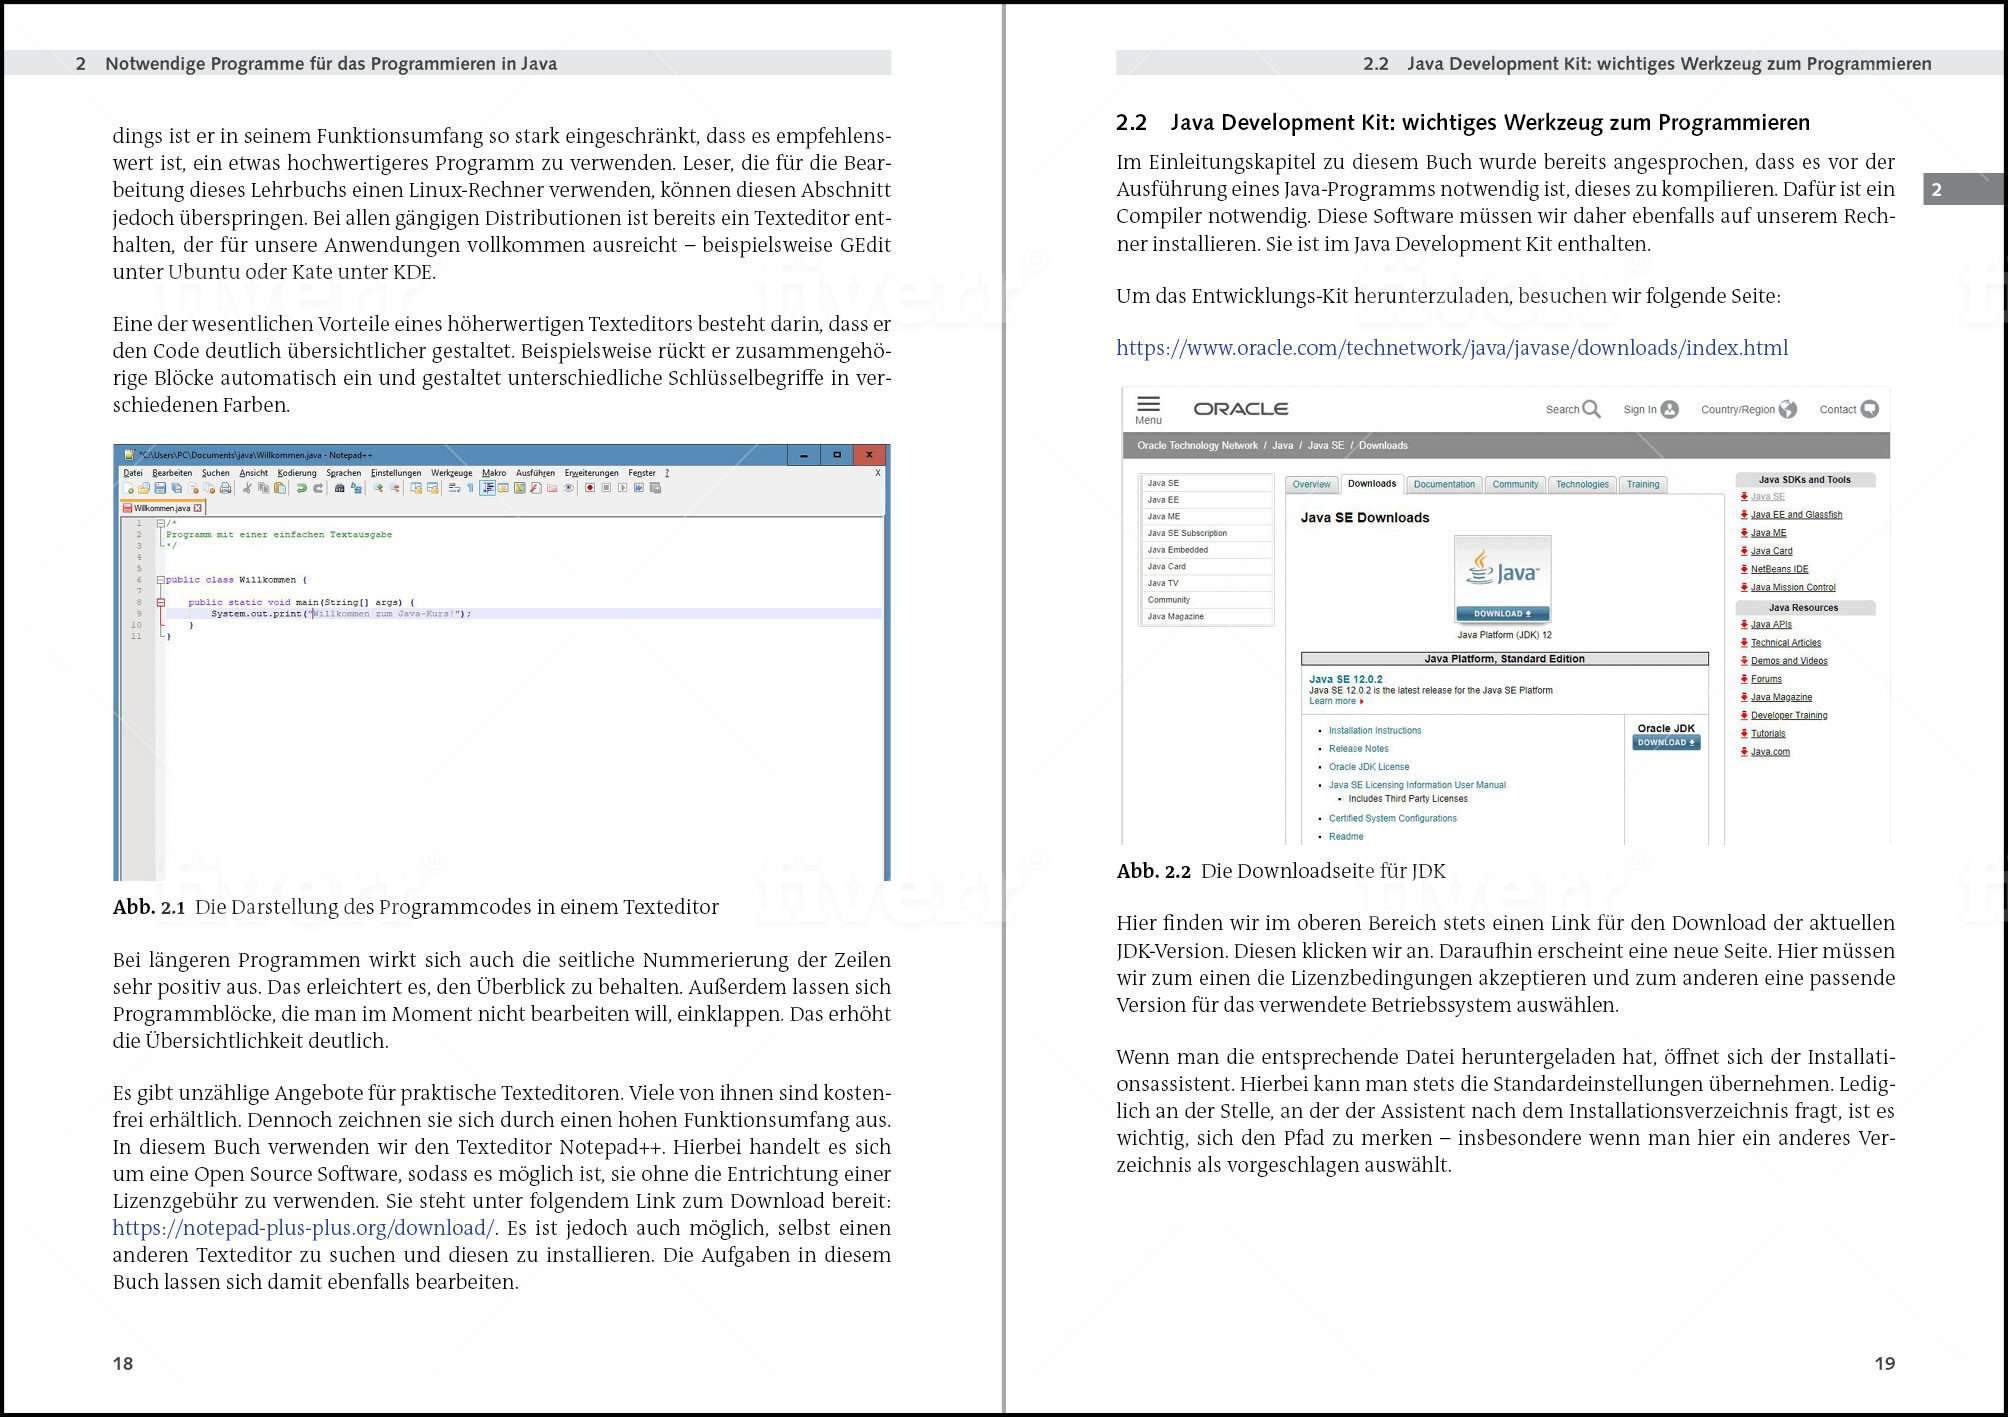 Java Kompendium: Professionell Java programmieren lernen - AZ-Delivery